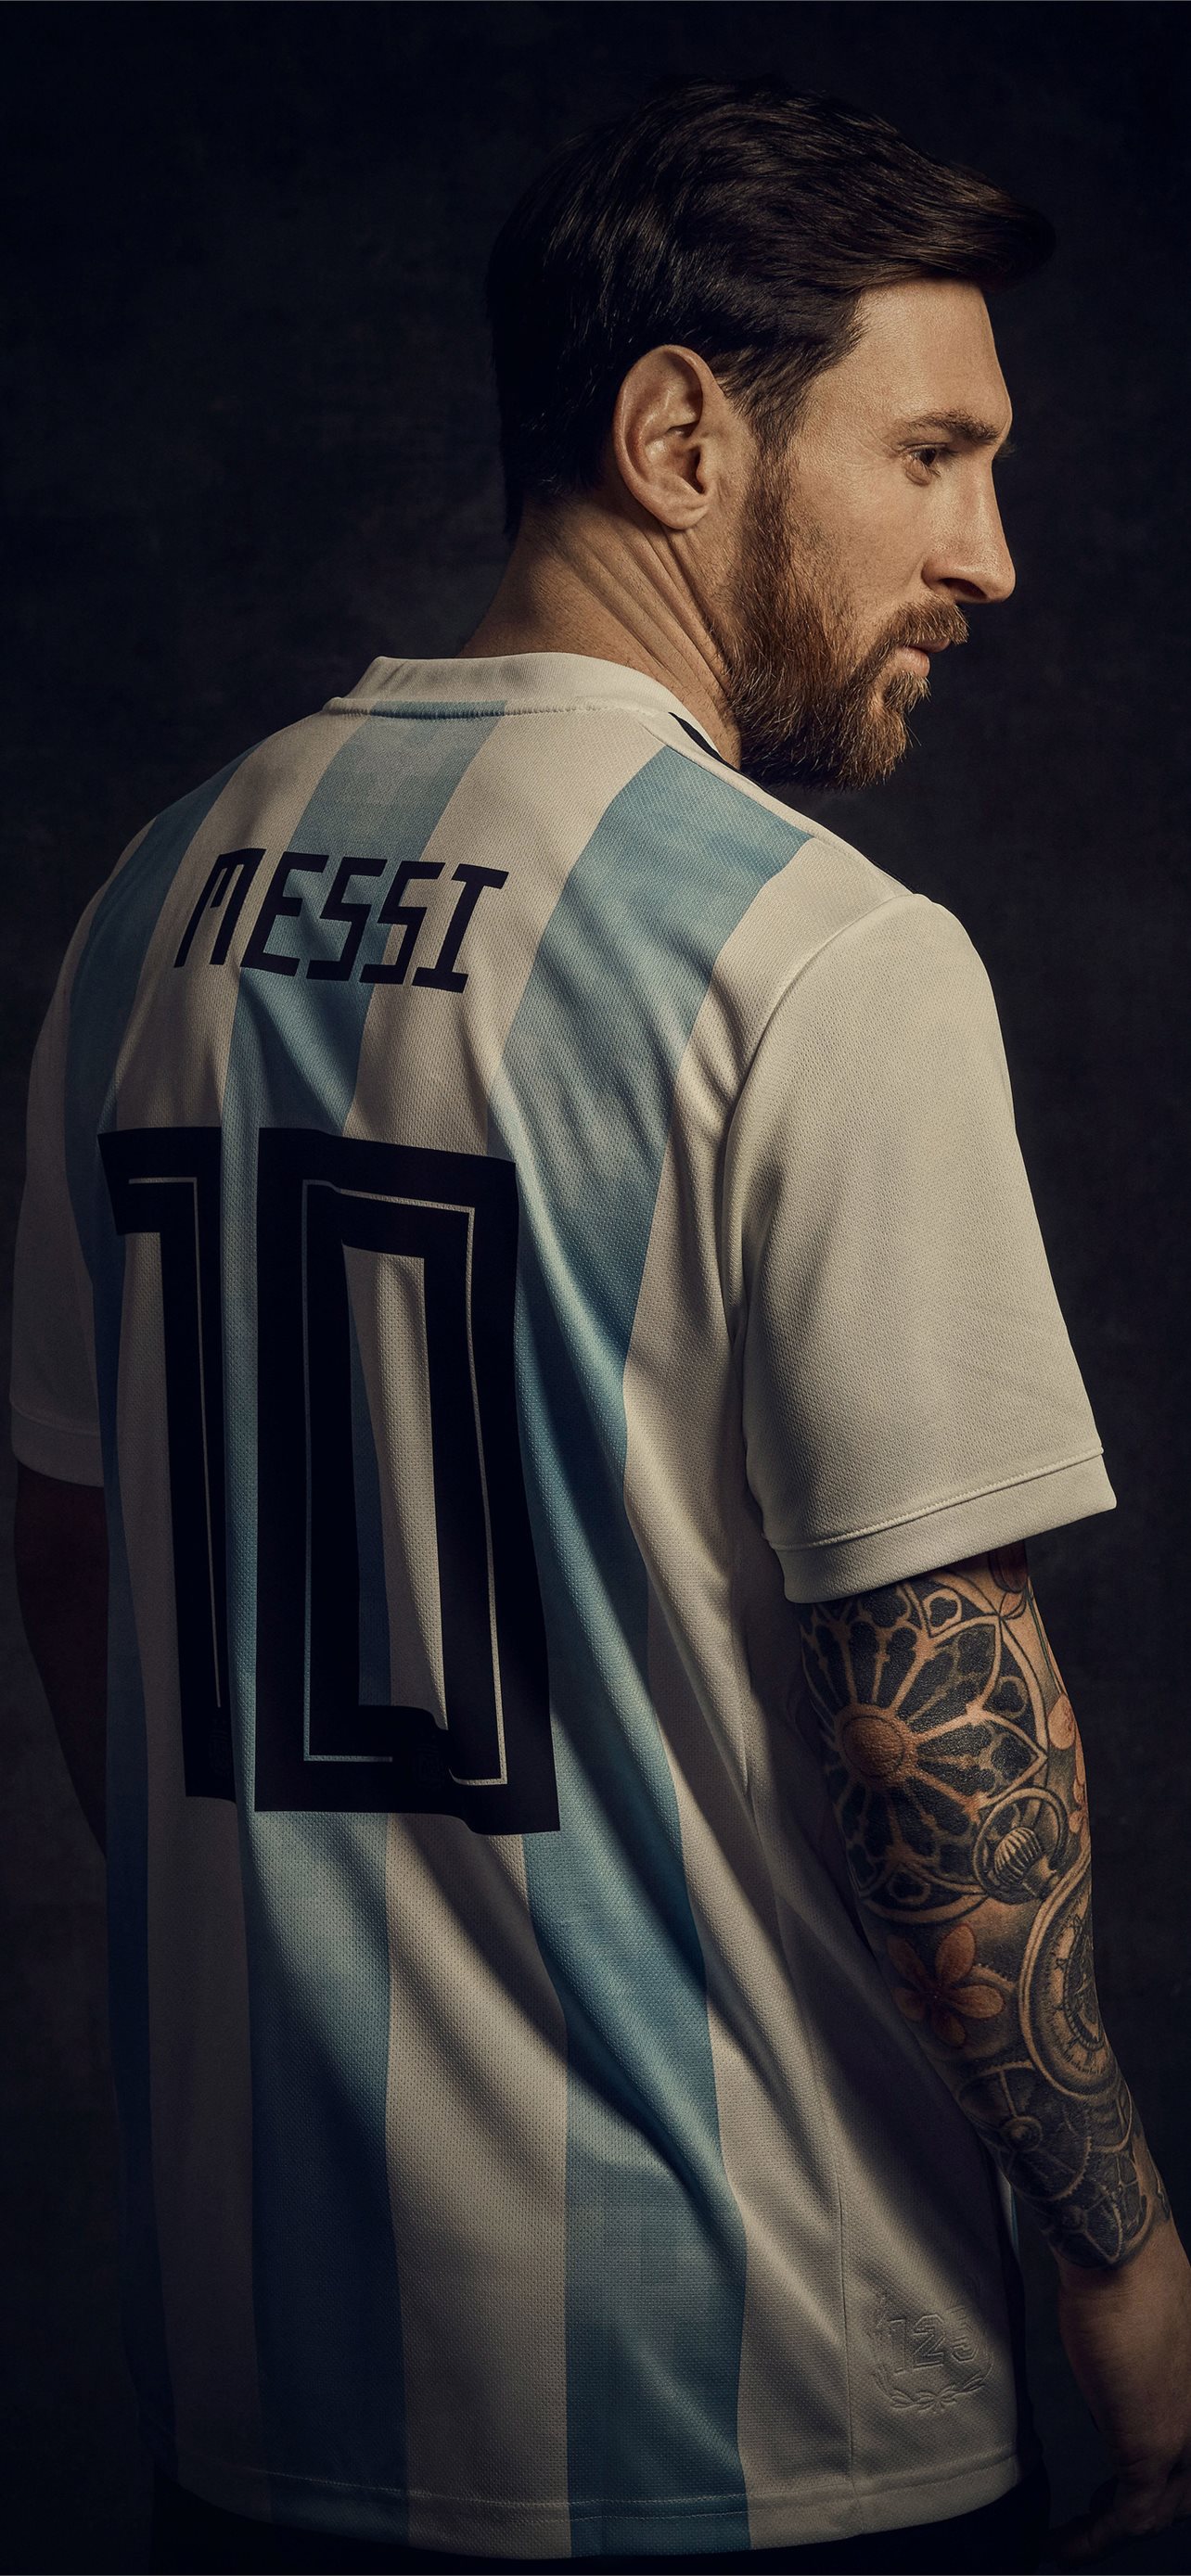 Với bộ sưu tập hình nền Messi HD tốt nhất cho iPhone, bạn sẽ cảm thấy đắm say trong thế giới bóng đá của siêu sao này. Hãy sử dụng những hình nền này để thể hiện niềm đam mê của bạn với bóng đá.